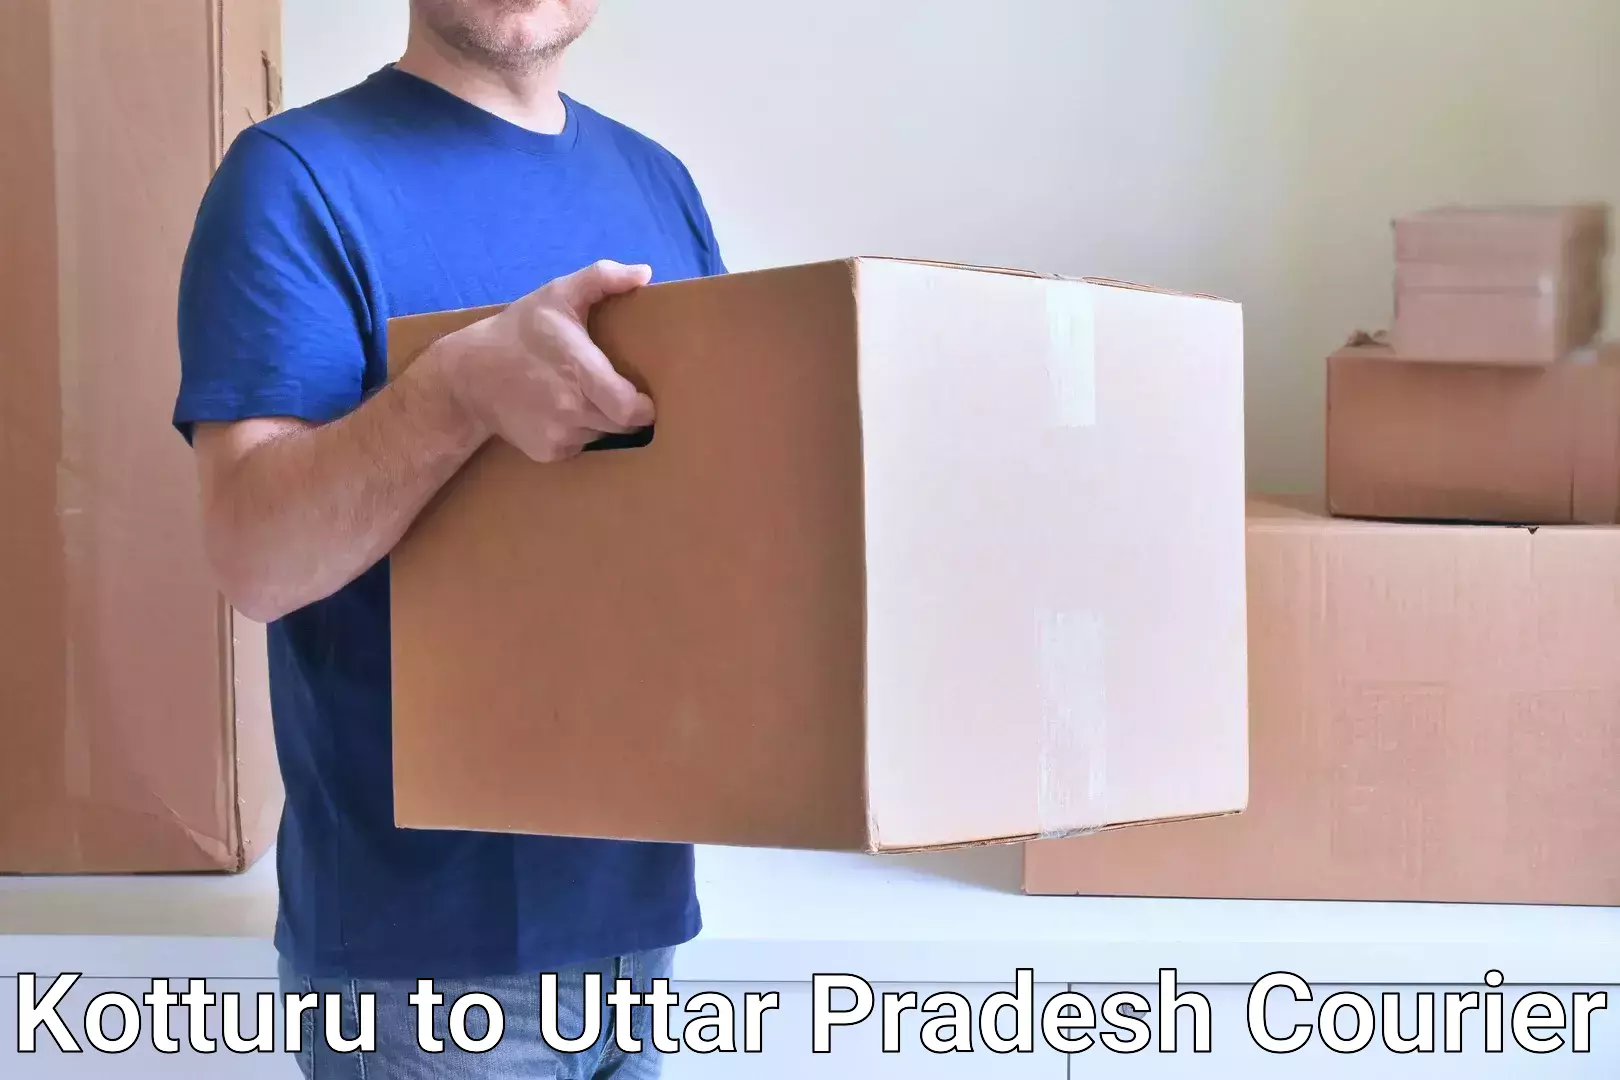 Personal courier services Kotturu to Uttar Pradesh